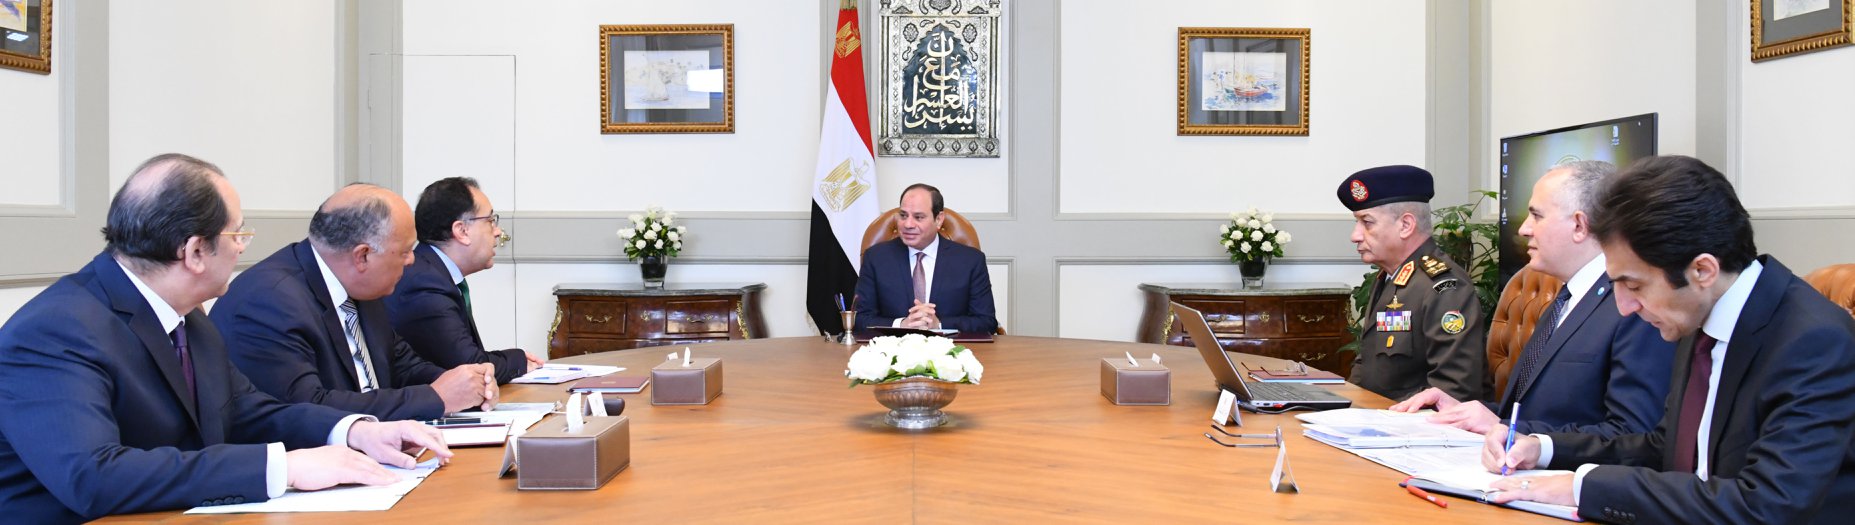   بسام راضى : الرئيس السيسى يبحث تطورات «سد النهضة» ومكافحة الإرهاب مع وزراء الدفاع والخارجية والري